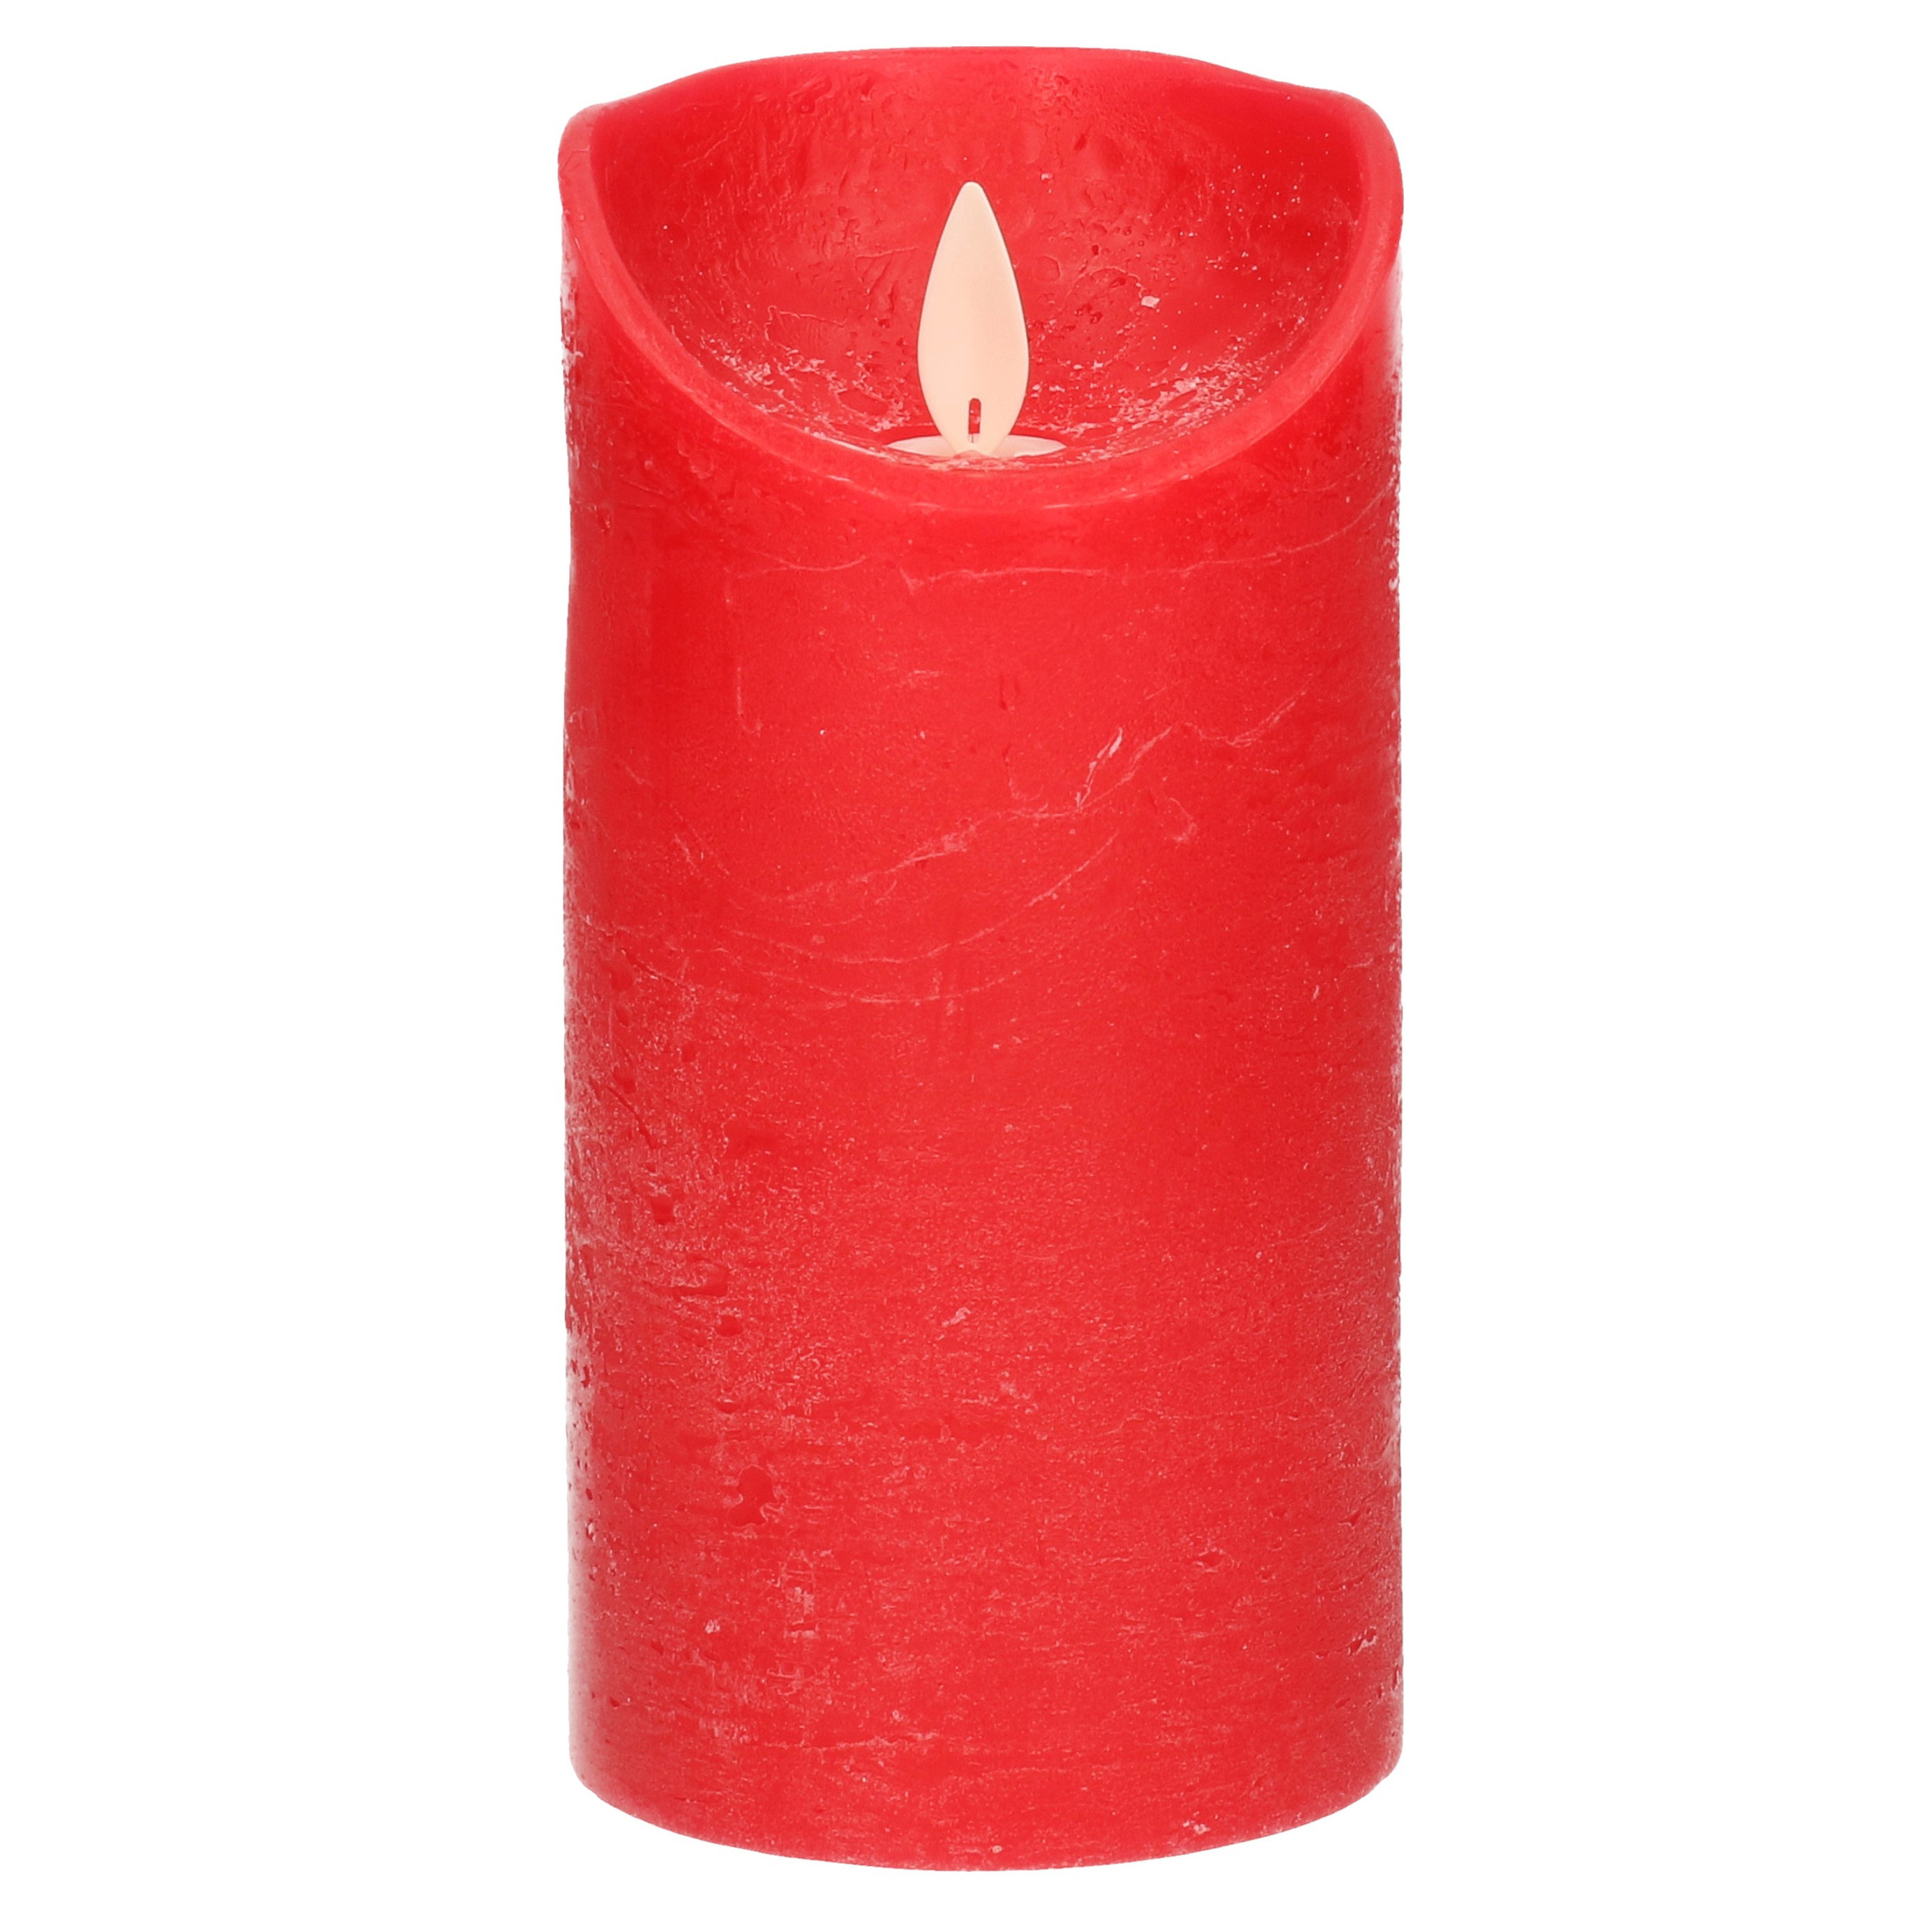 1x LED kaarsen-stompkaarsen rood met dansvlam 15 cm